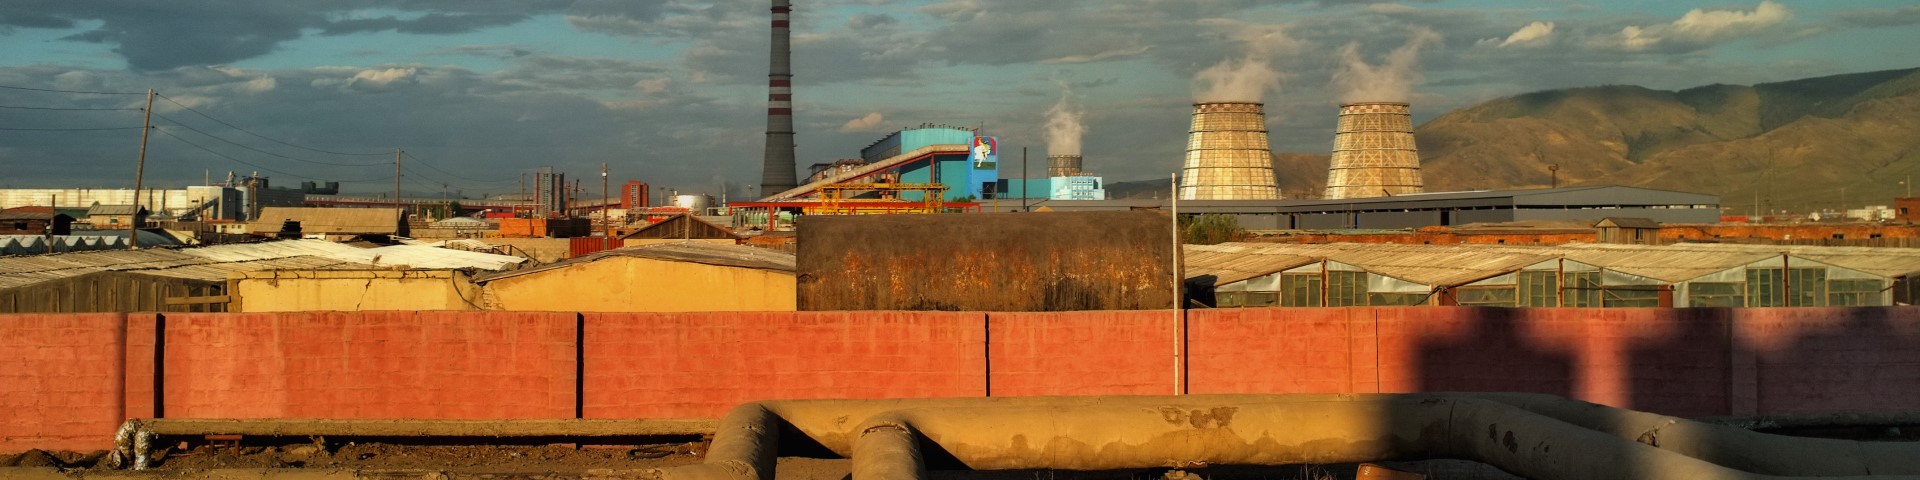 Industrieanlagen mit Schornsteinen im Hintergrund